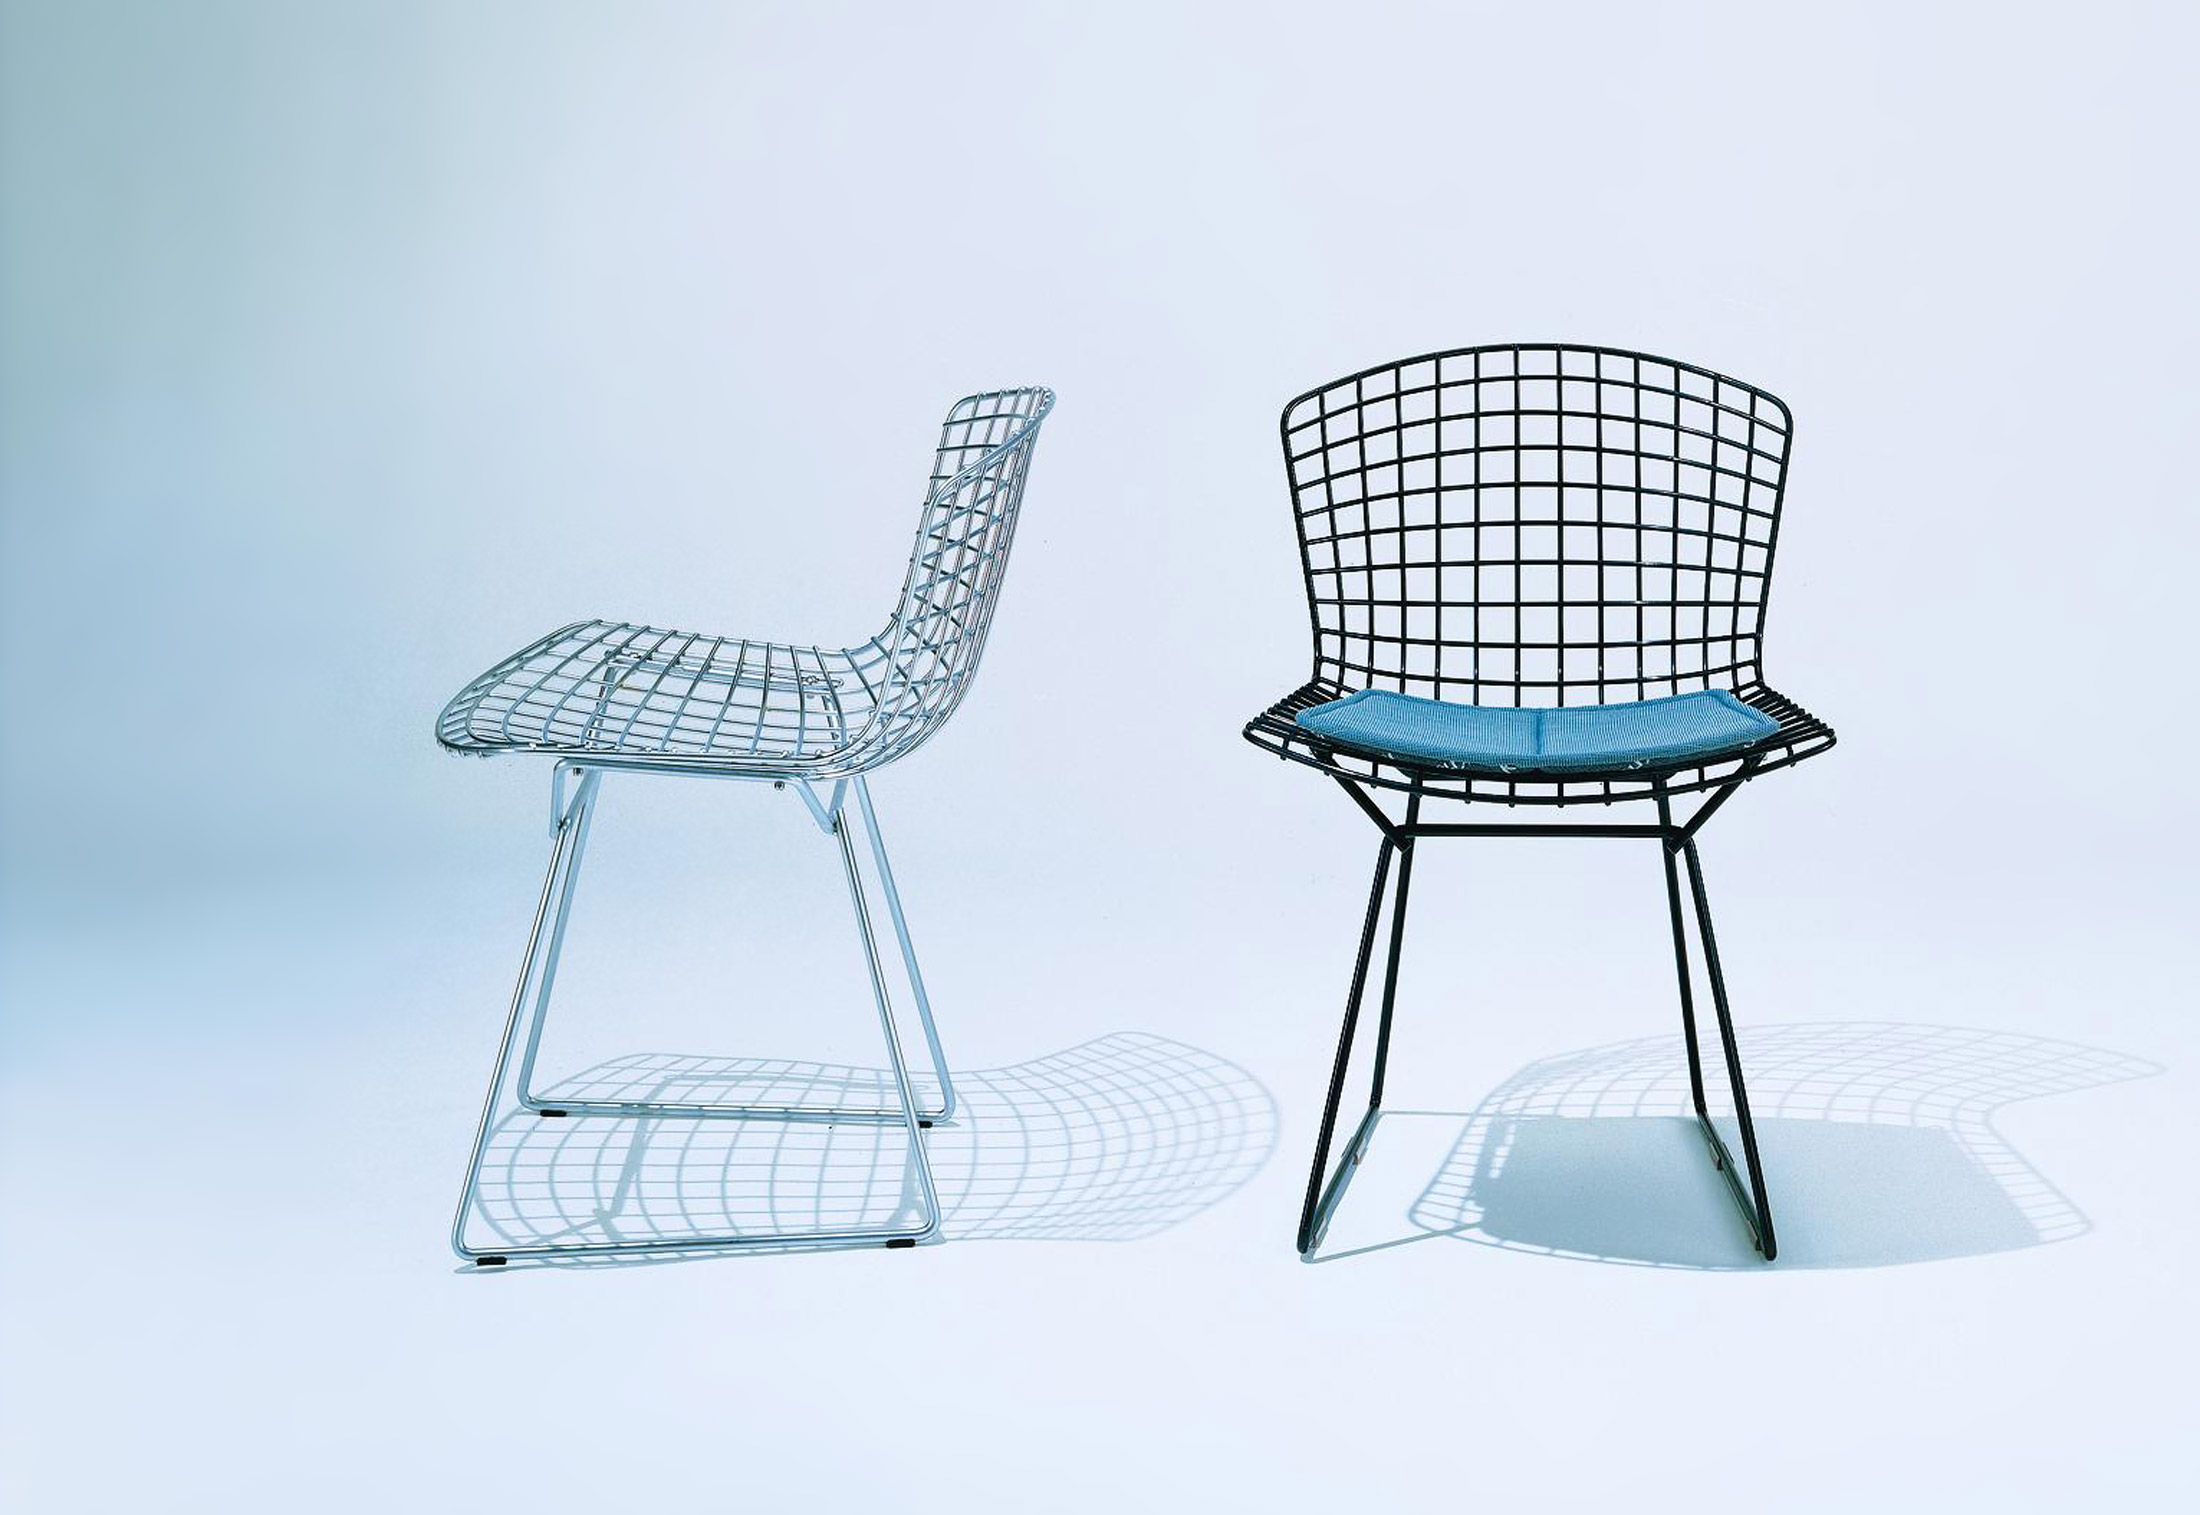 Bertoia longue seating di knoll sedie poltroncine for Sedie design knoll